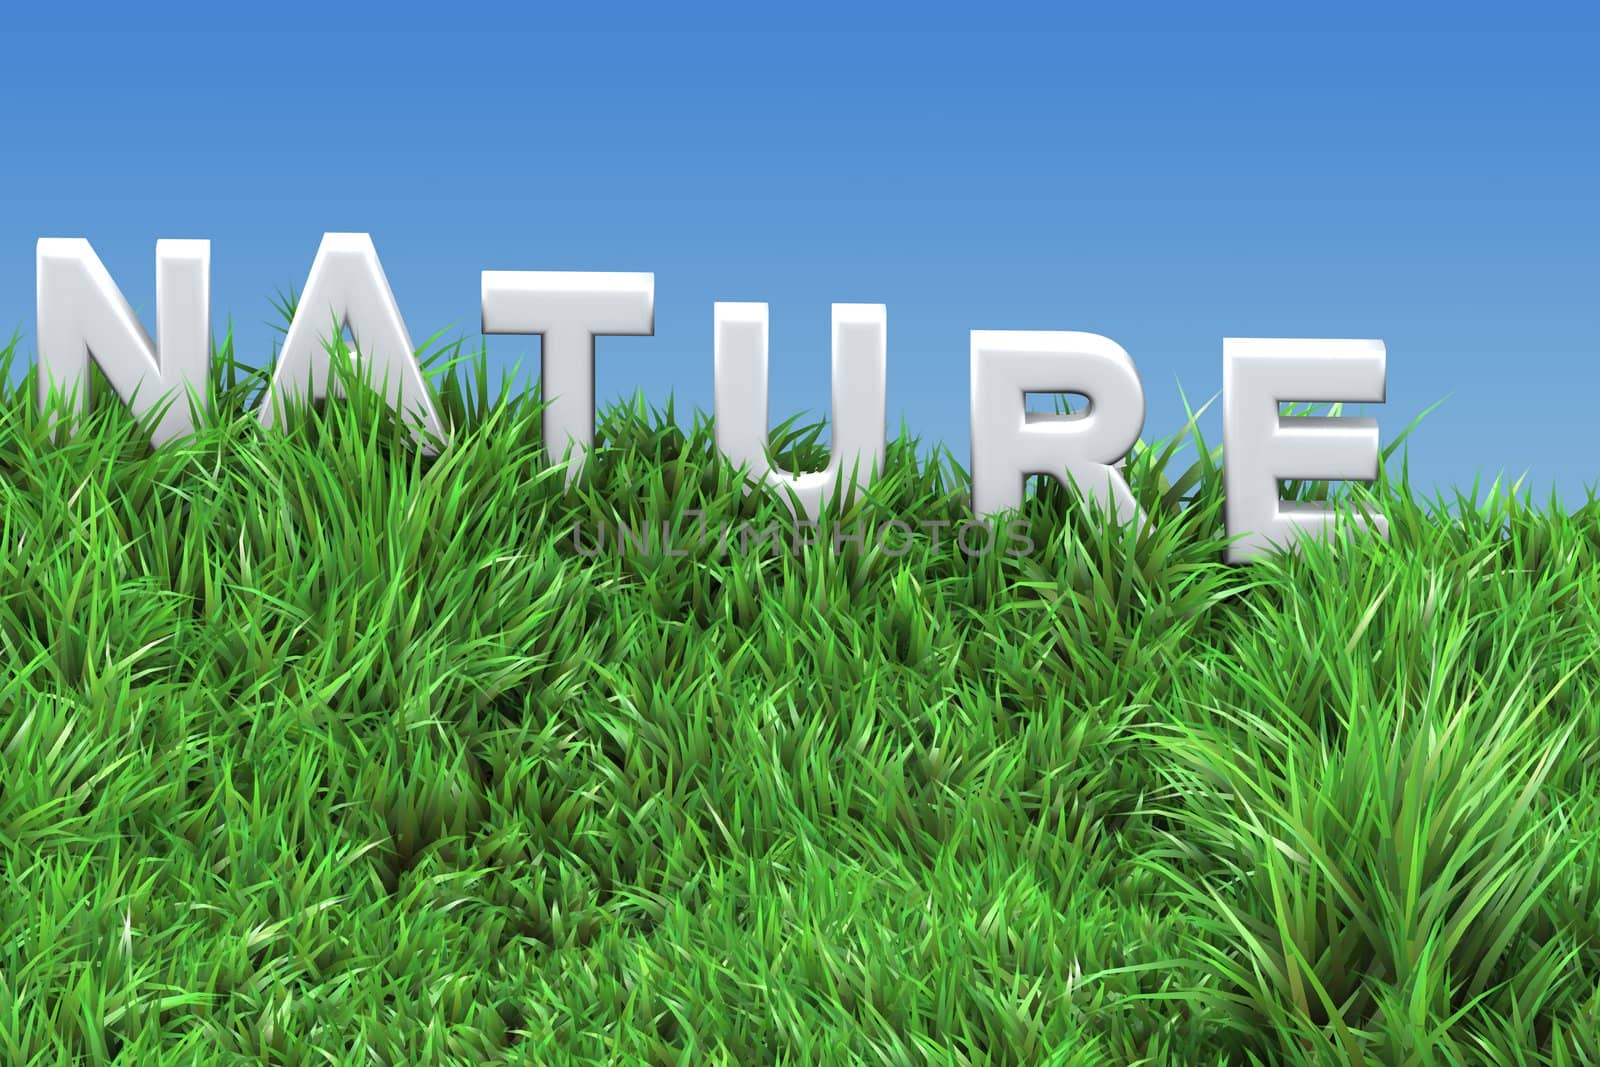 natural background illustration - ecology concept